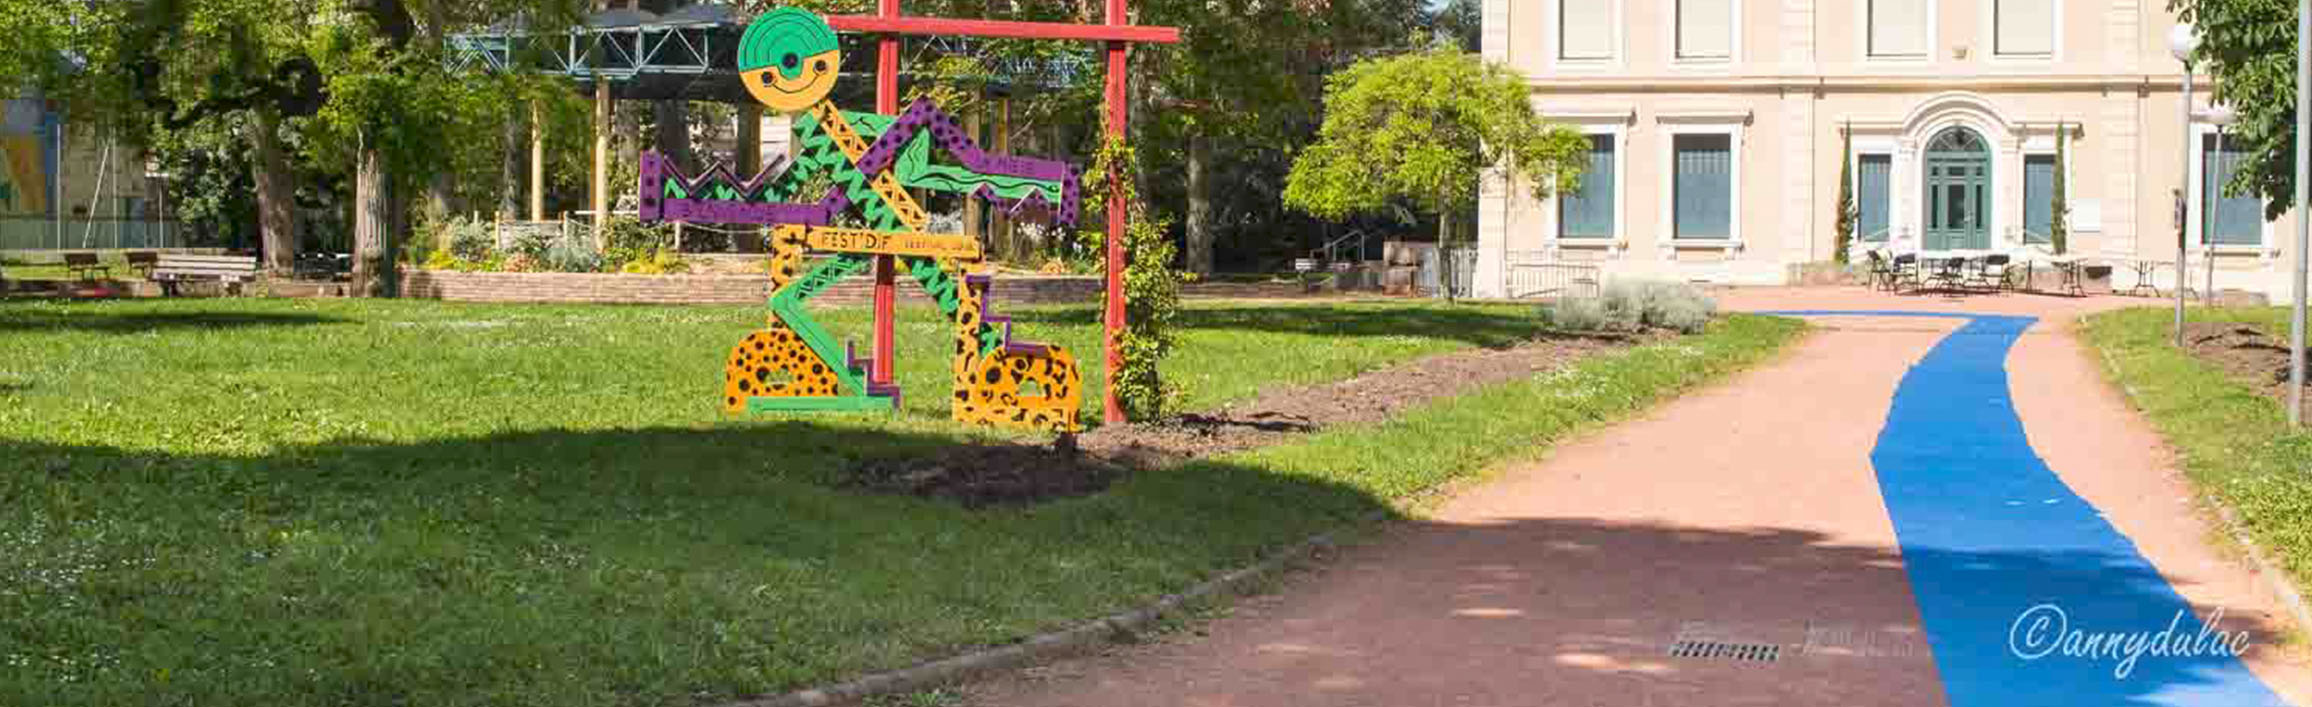 Image en plan large d'un parc citadin, couvert de pelouse, la statue du personnage représentant le festival Fest Dif est à gauche dans l'herbe. A droite, une allée de terre battue s'avance du bas de l'image jusqu'à un bâtiment au loin. Sur tout le parcours de l'allée est installé un cheminement de couleur bleue unie.